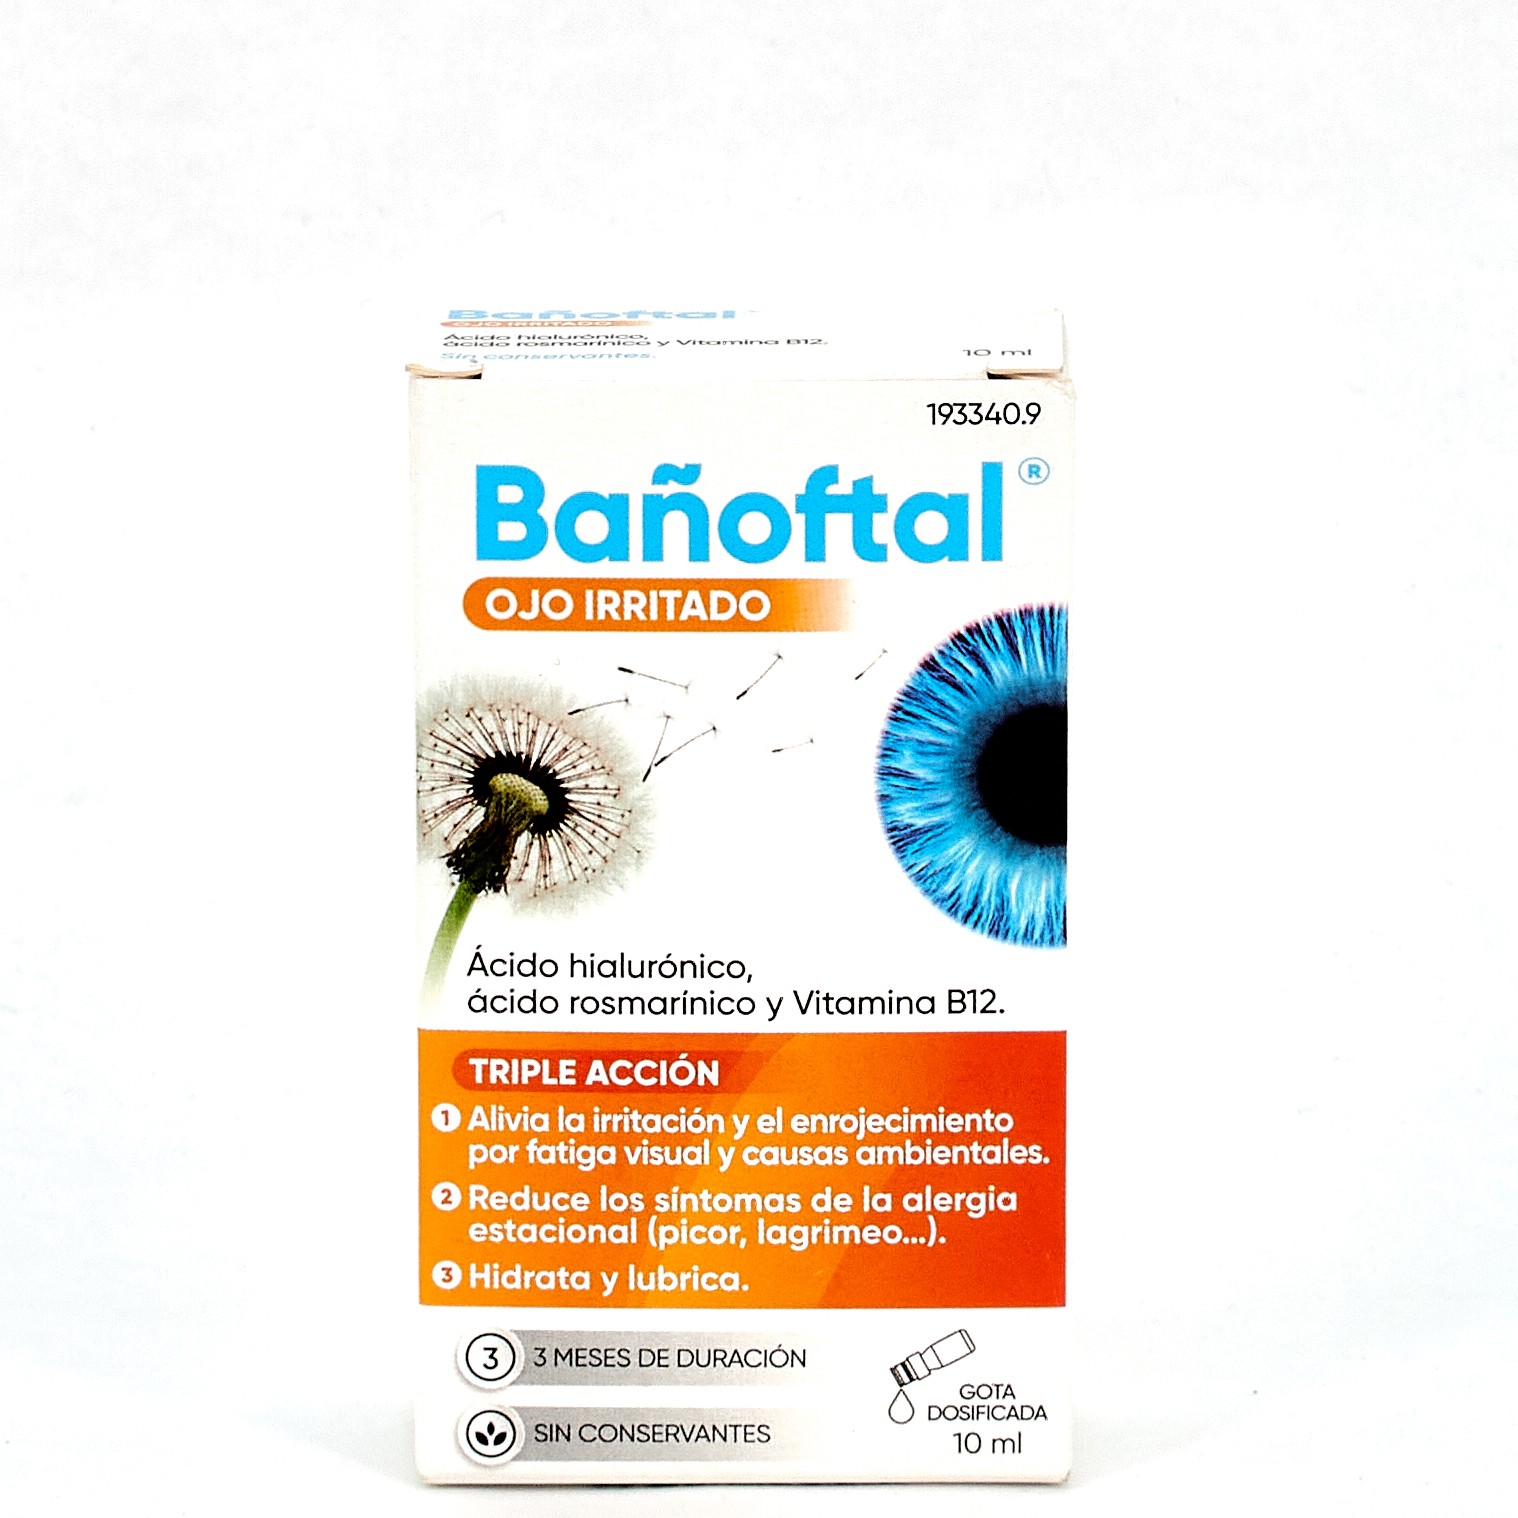 Bañoftal Ojo Seco 0,4% Gotas 10 ml · Higiene